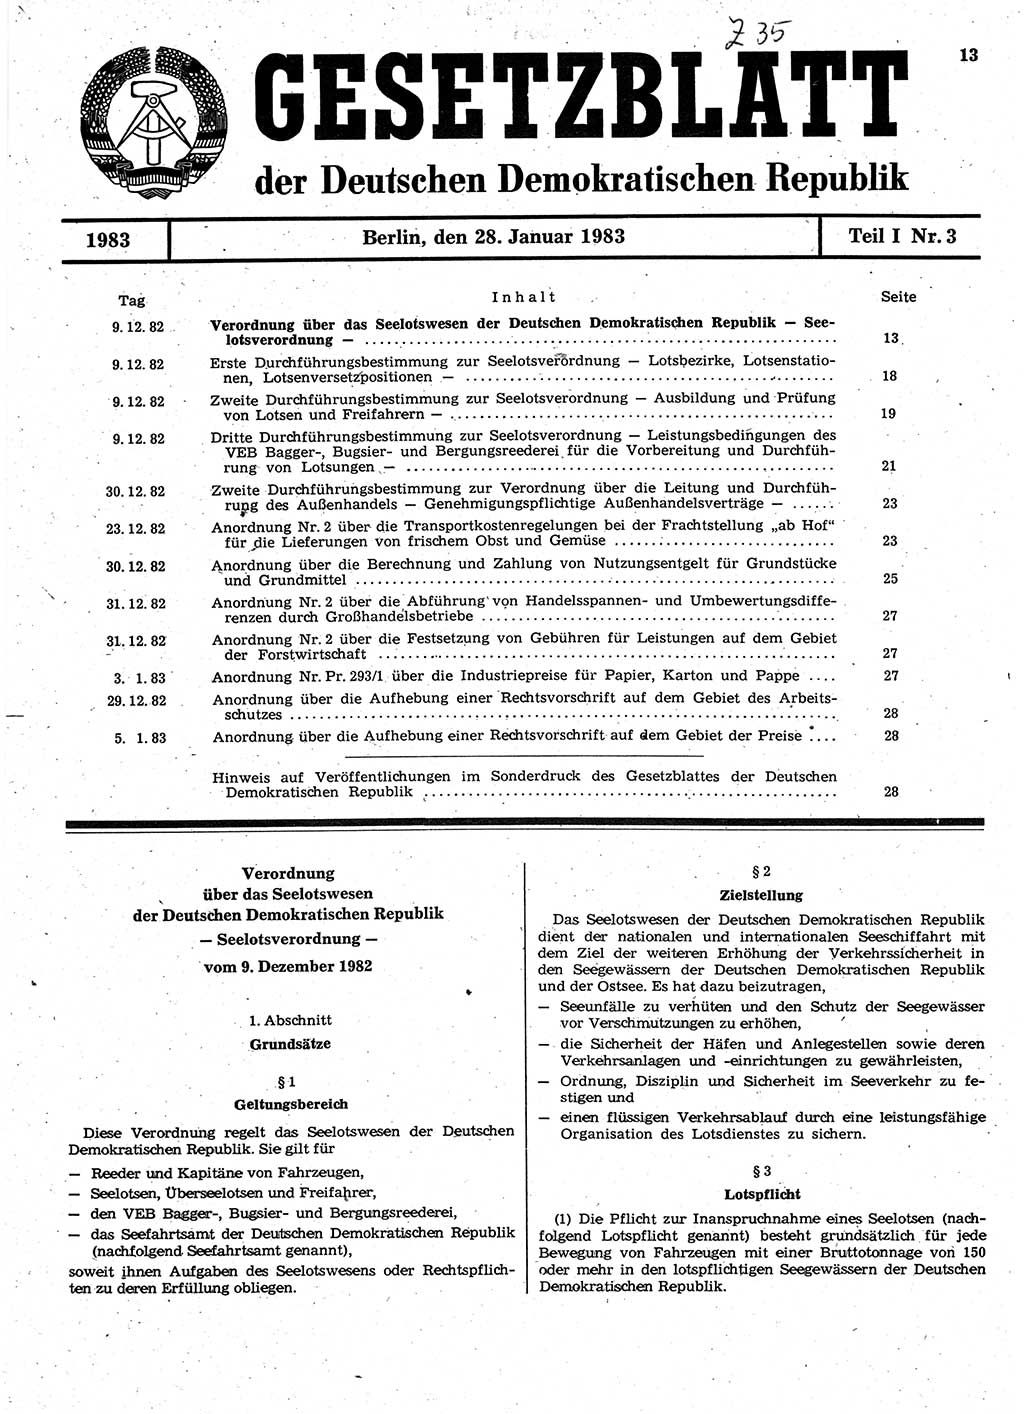 Gesetzblatt (GBl.) der Deutschen Demokratischen Republik (DDR) Teil Ⅰ 1983, Seite 13 (GBl. DDR Ⅰ 1983, S. 13)